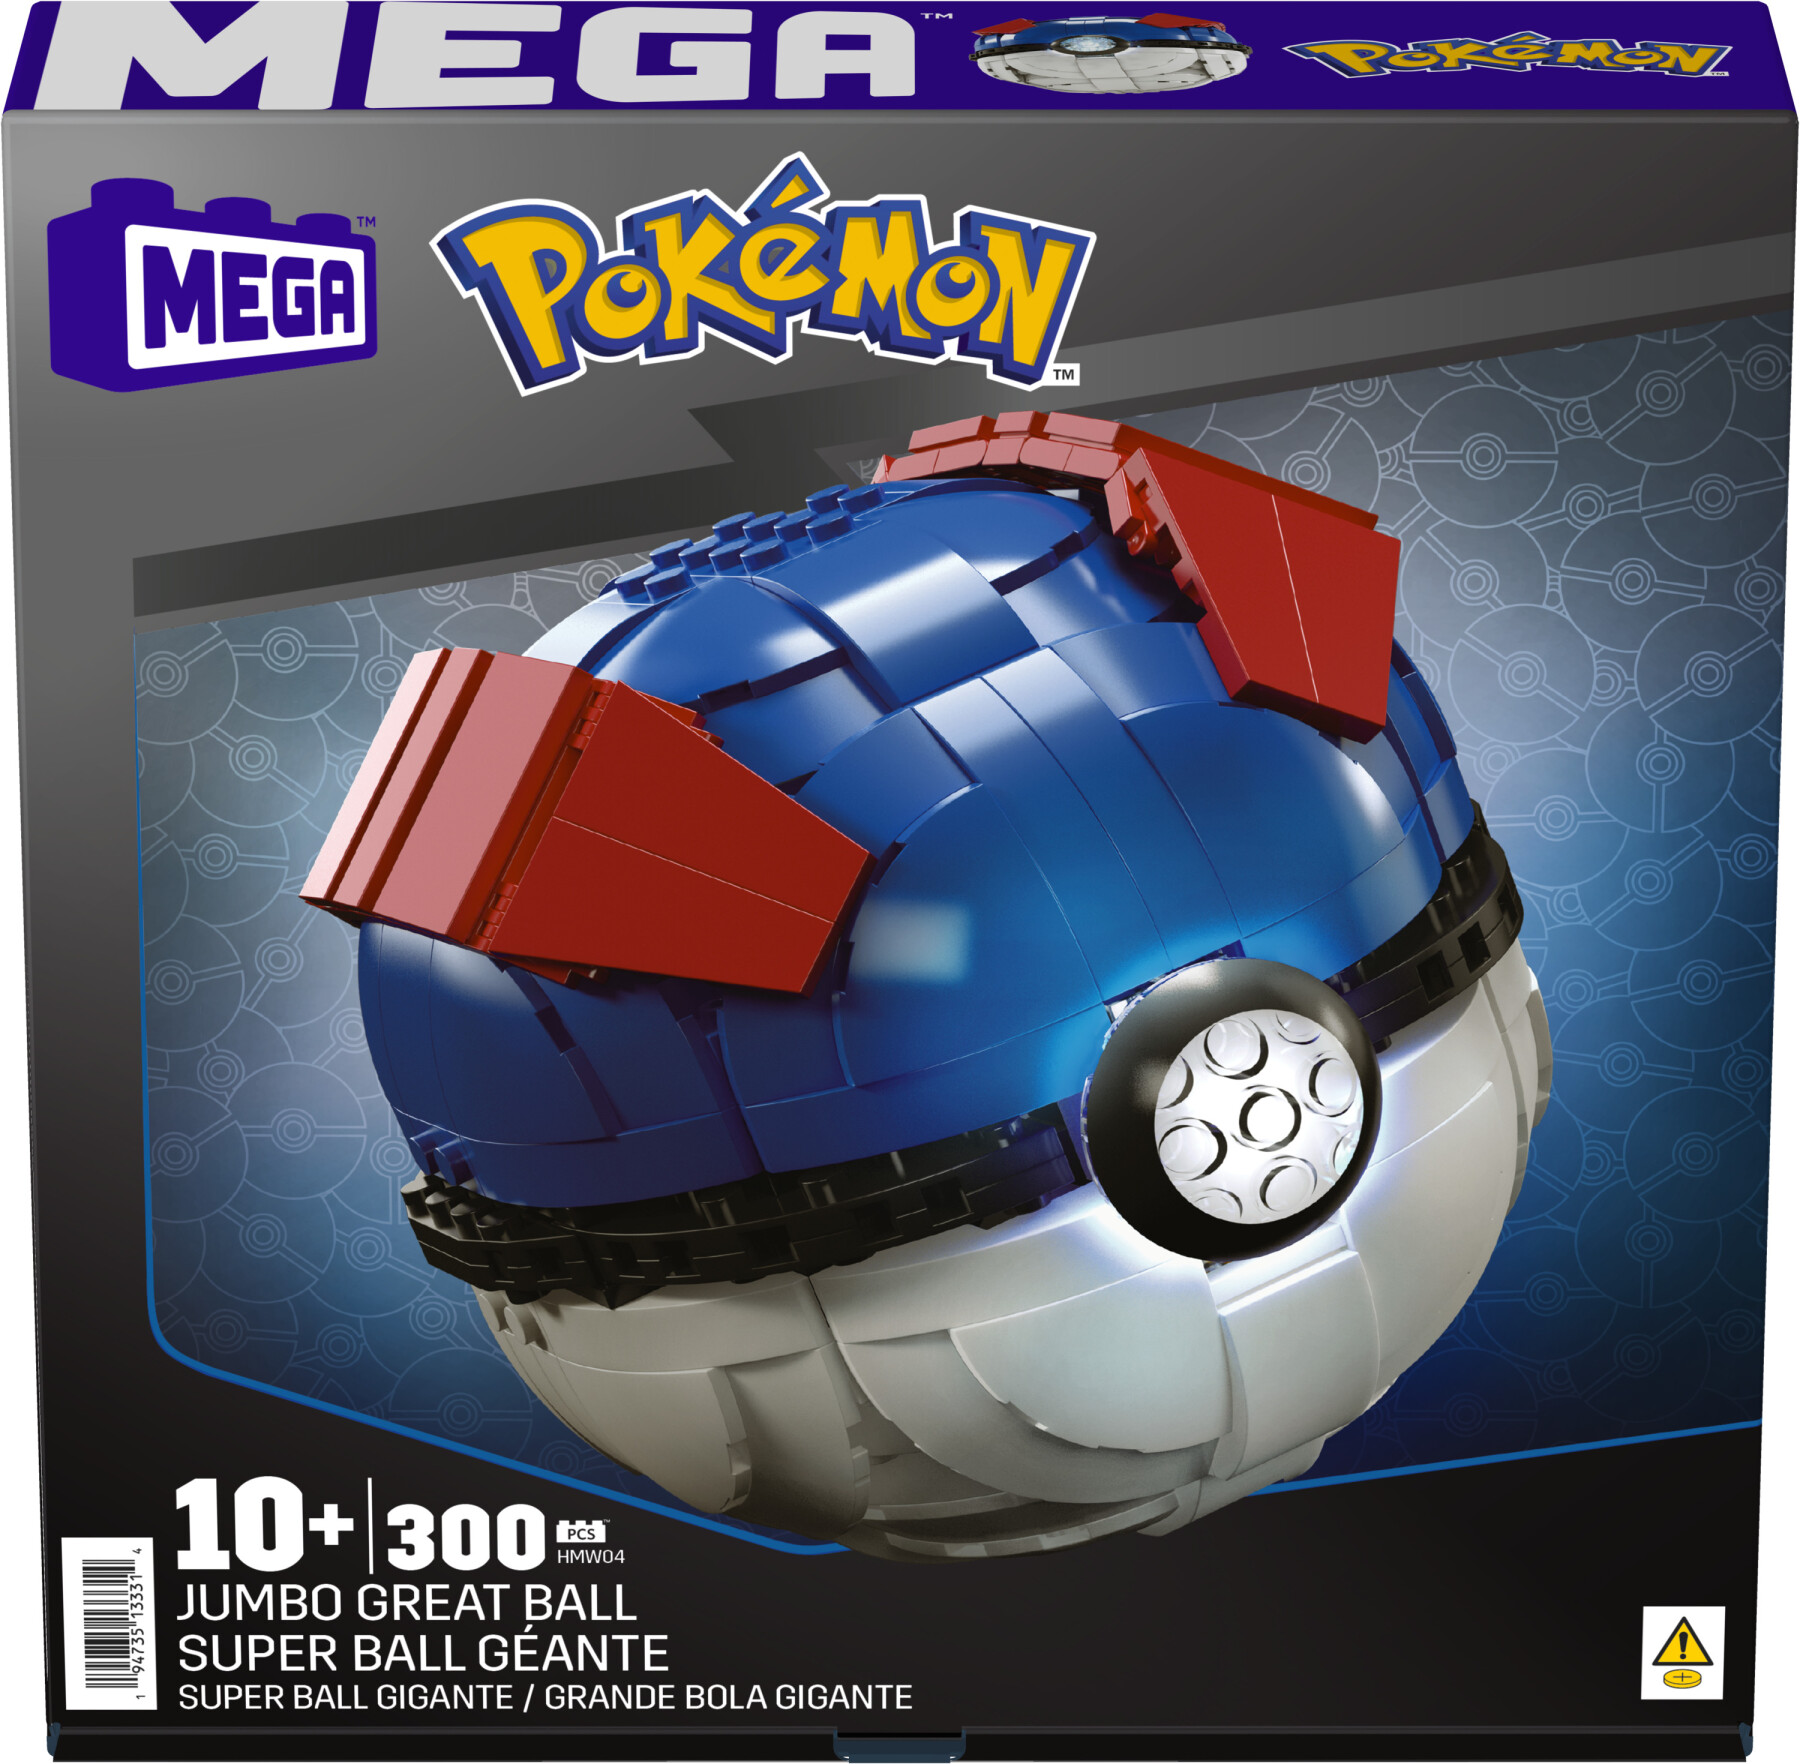 Mega pokémon - mega ball gigante, set da costruire con 299 pezzi e luci, pulsante centrale si illumina e lampeggia - MEGA BLOKS, POKEMON